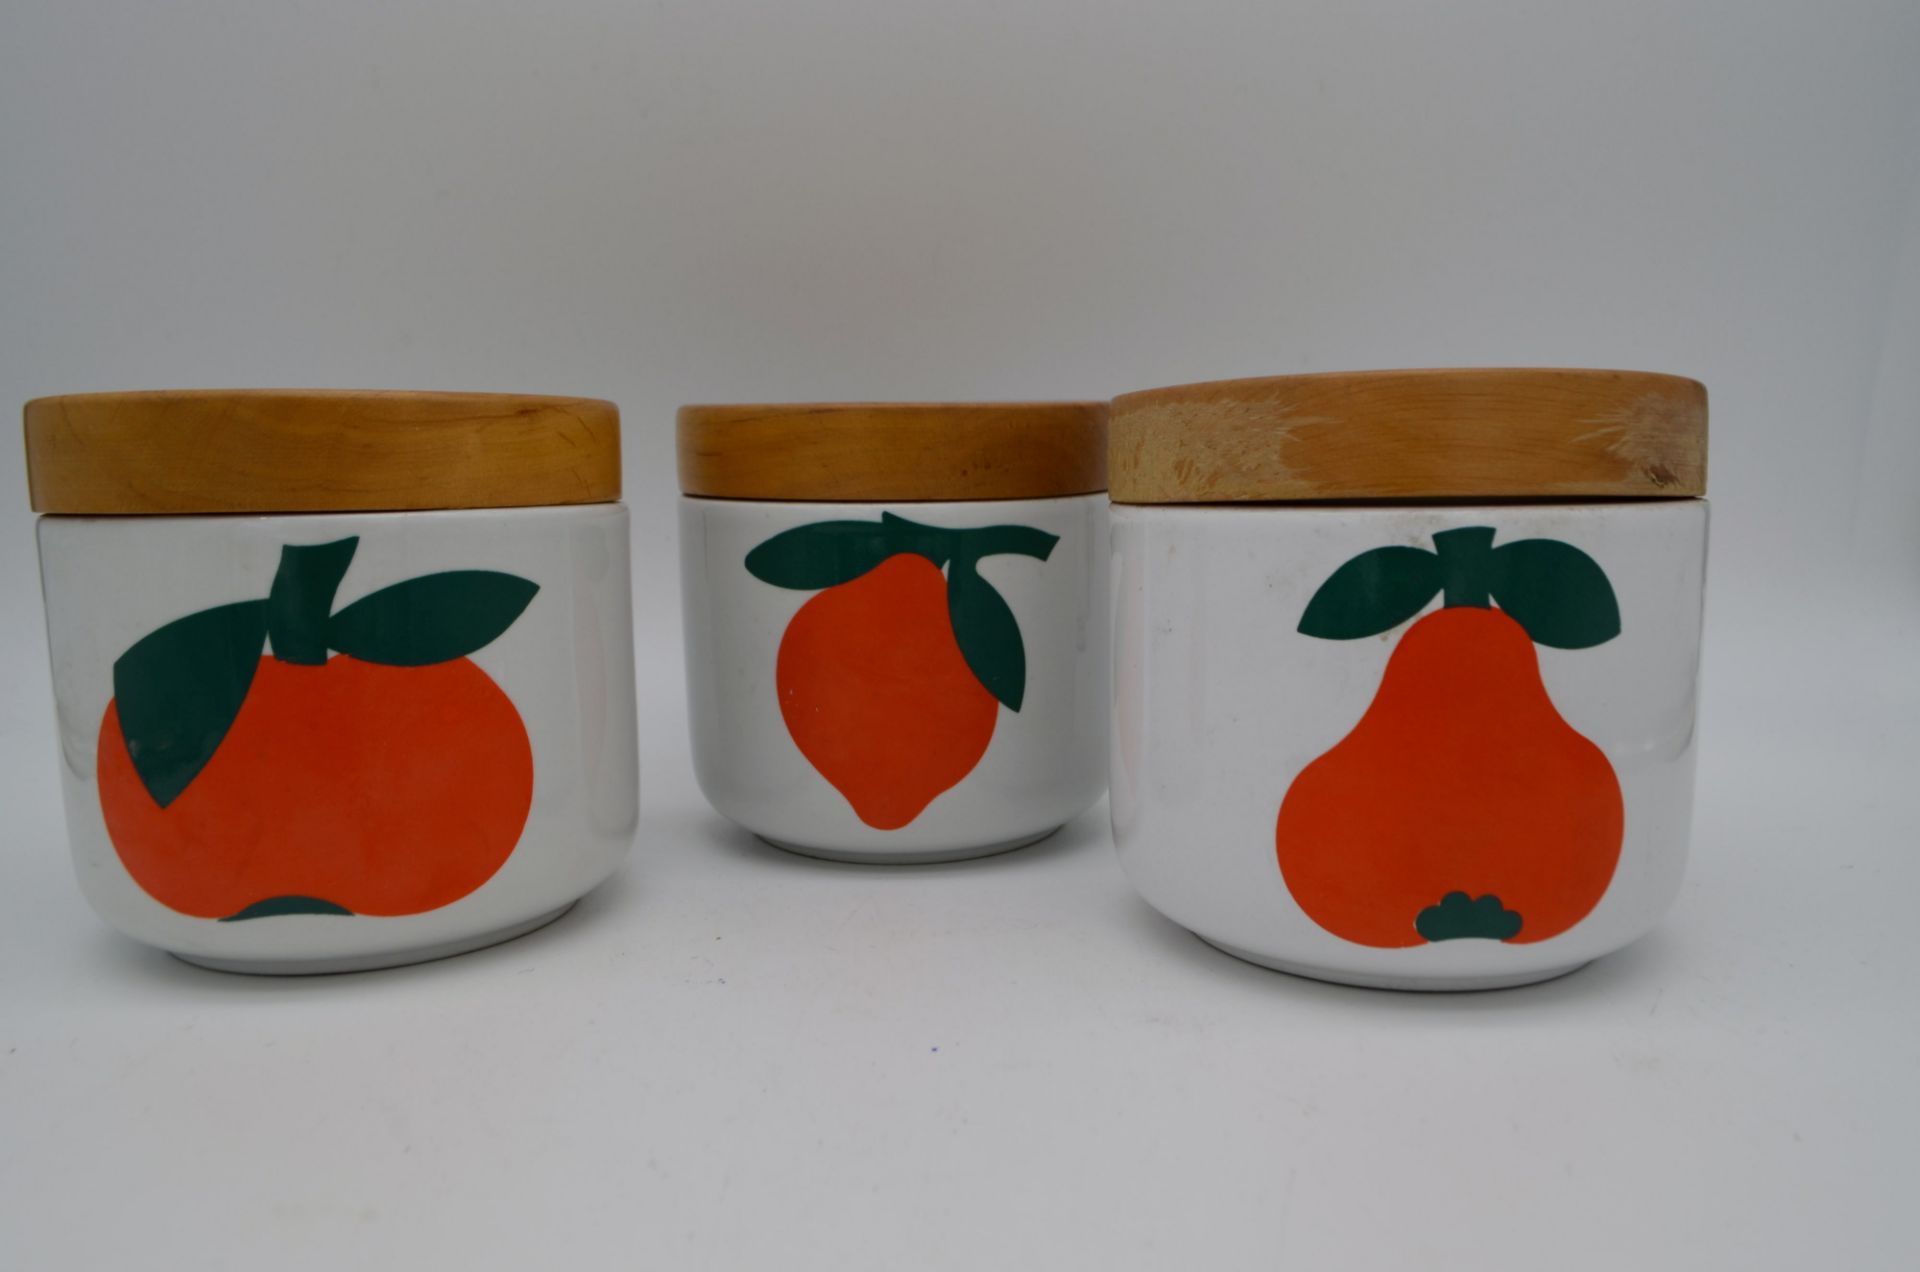 Lot de 3 pot vintage avec couvercle en bois Italy Ceramics Franco Pozzi - Image 2 of 2